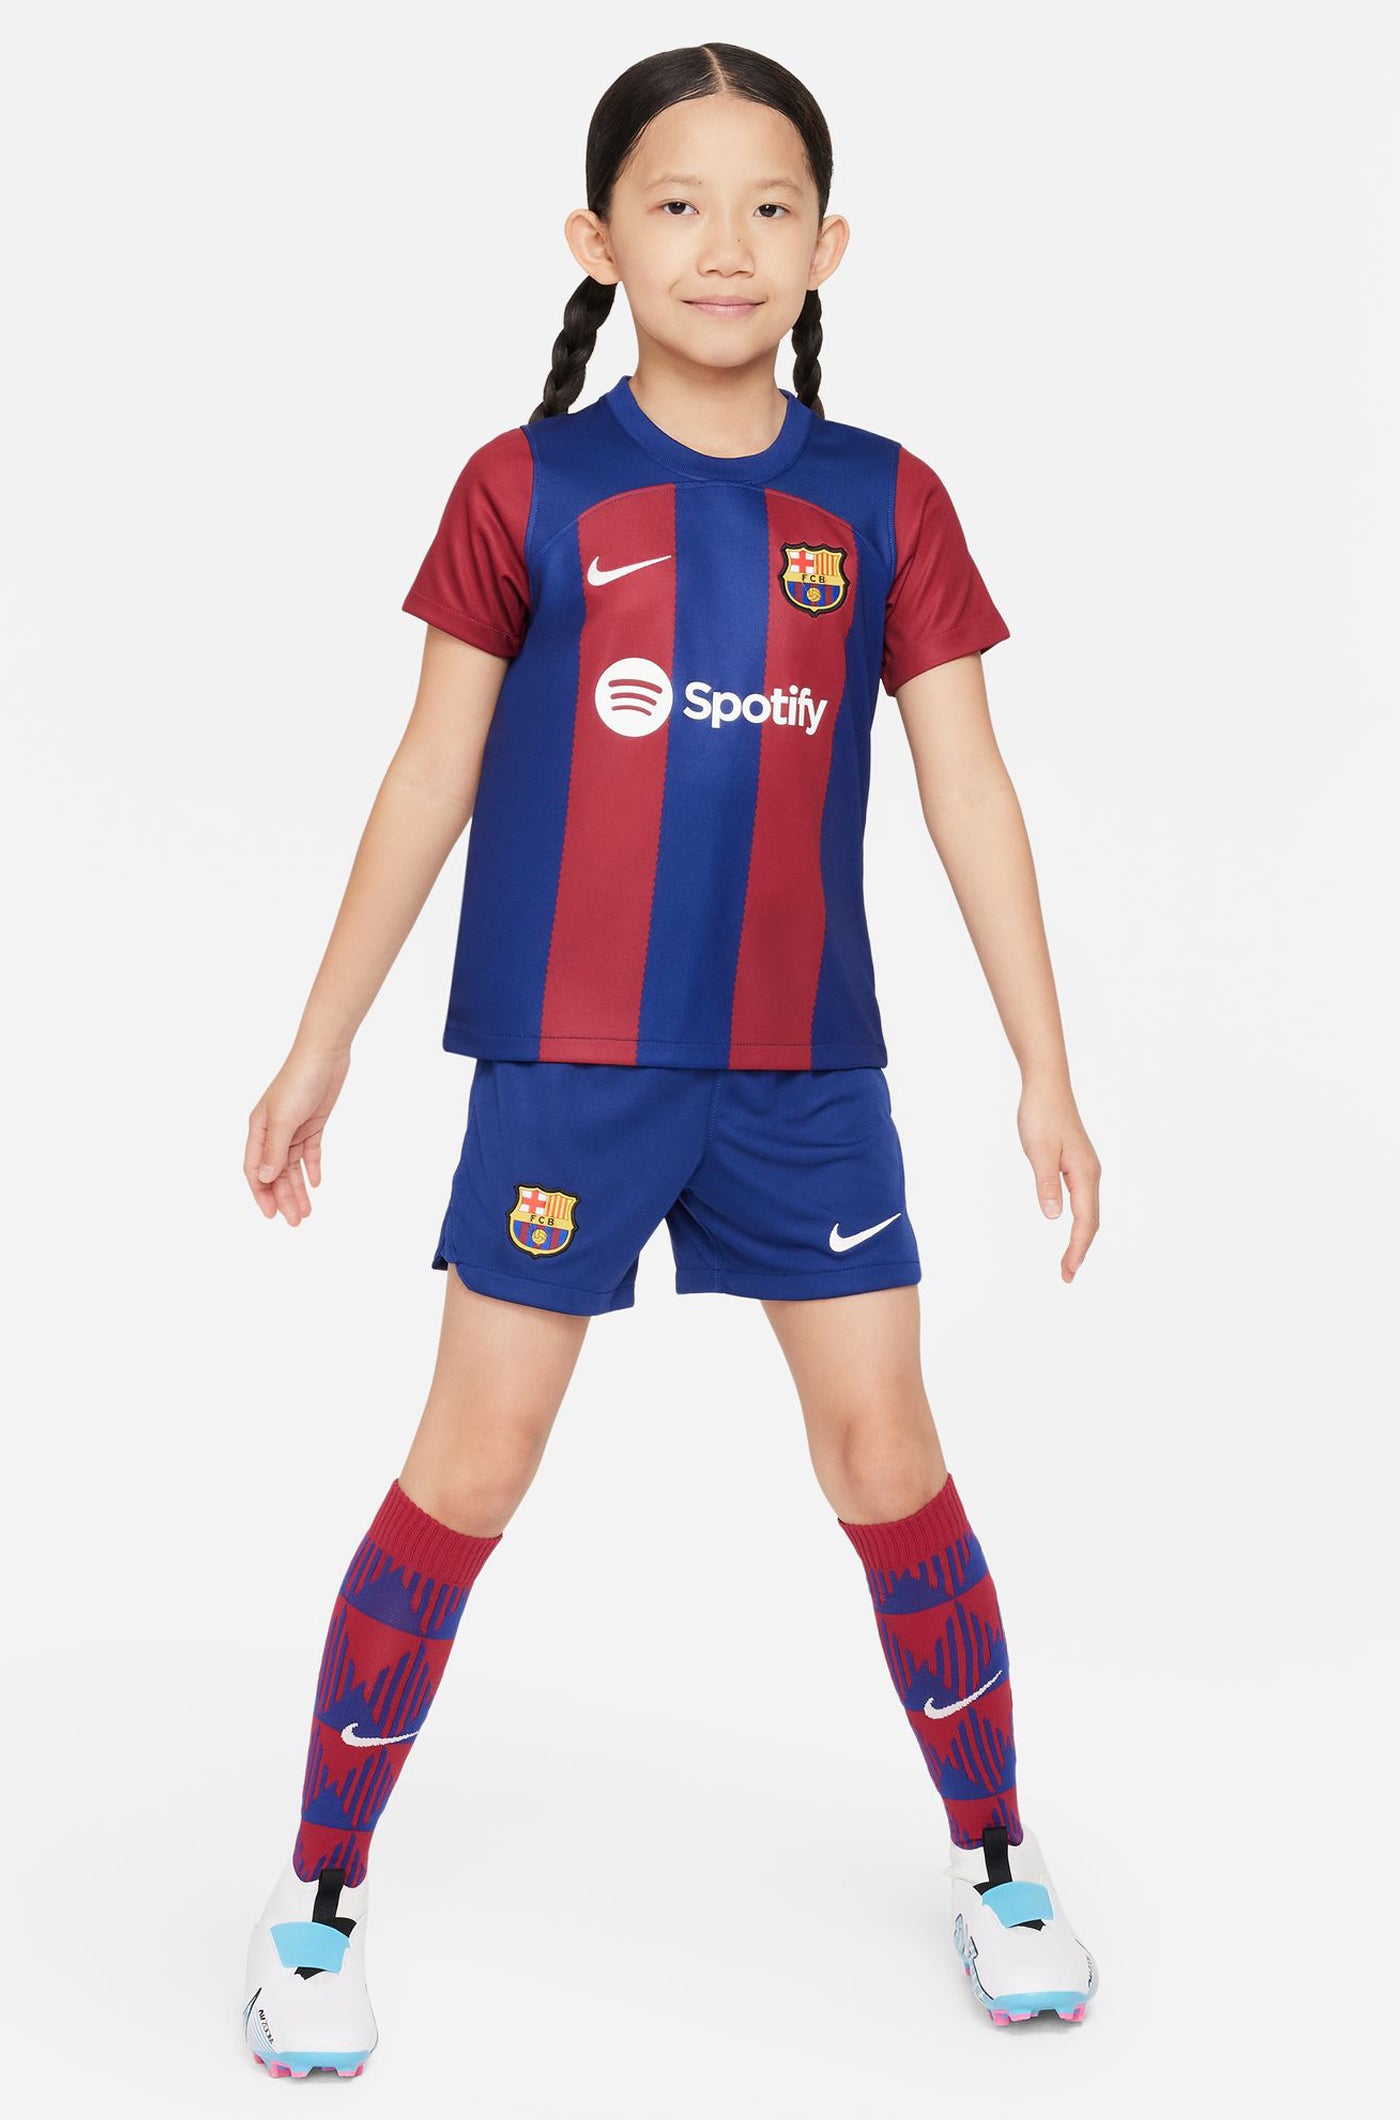 FC Barcelona home Kit 23/24 – Younger Kids  - ENGEN